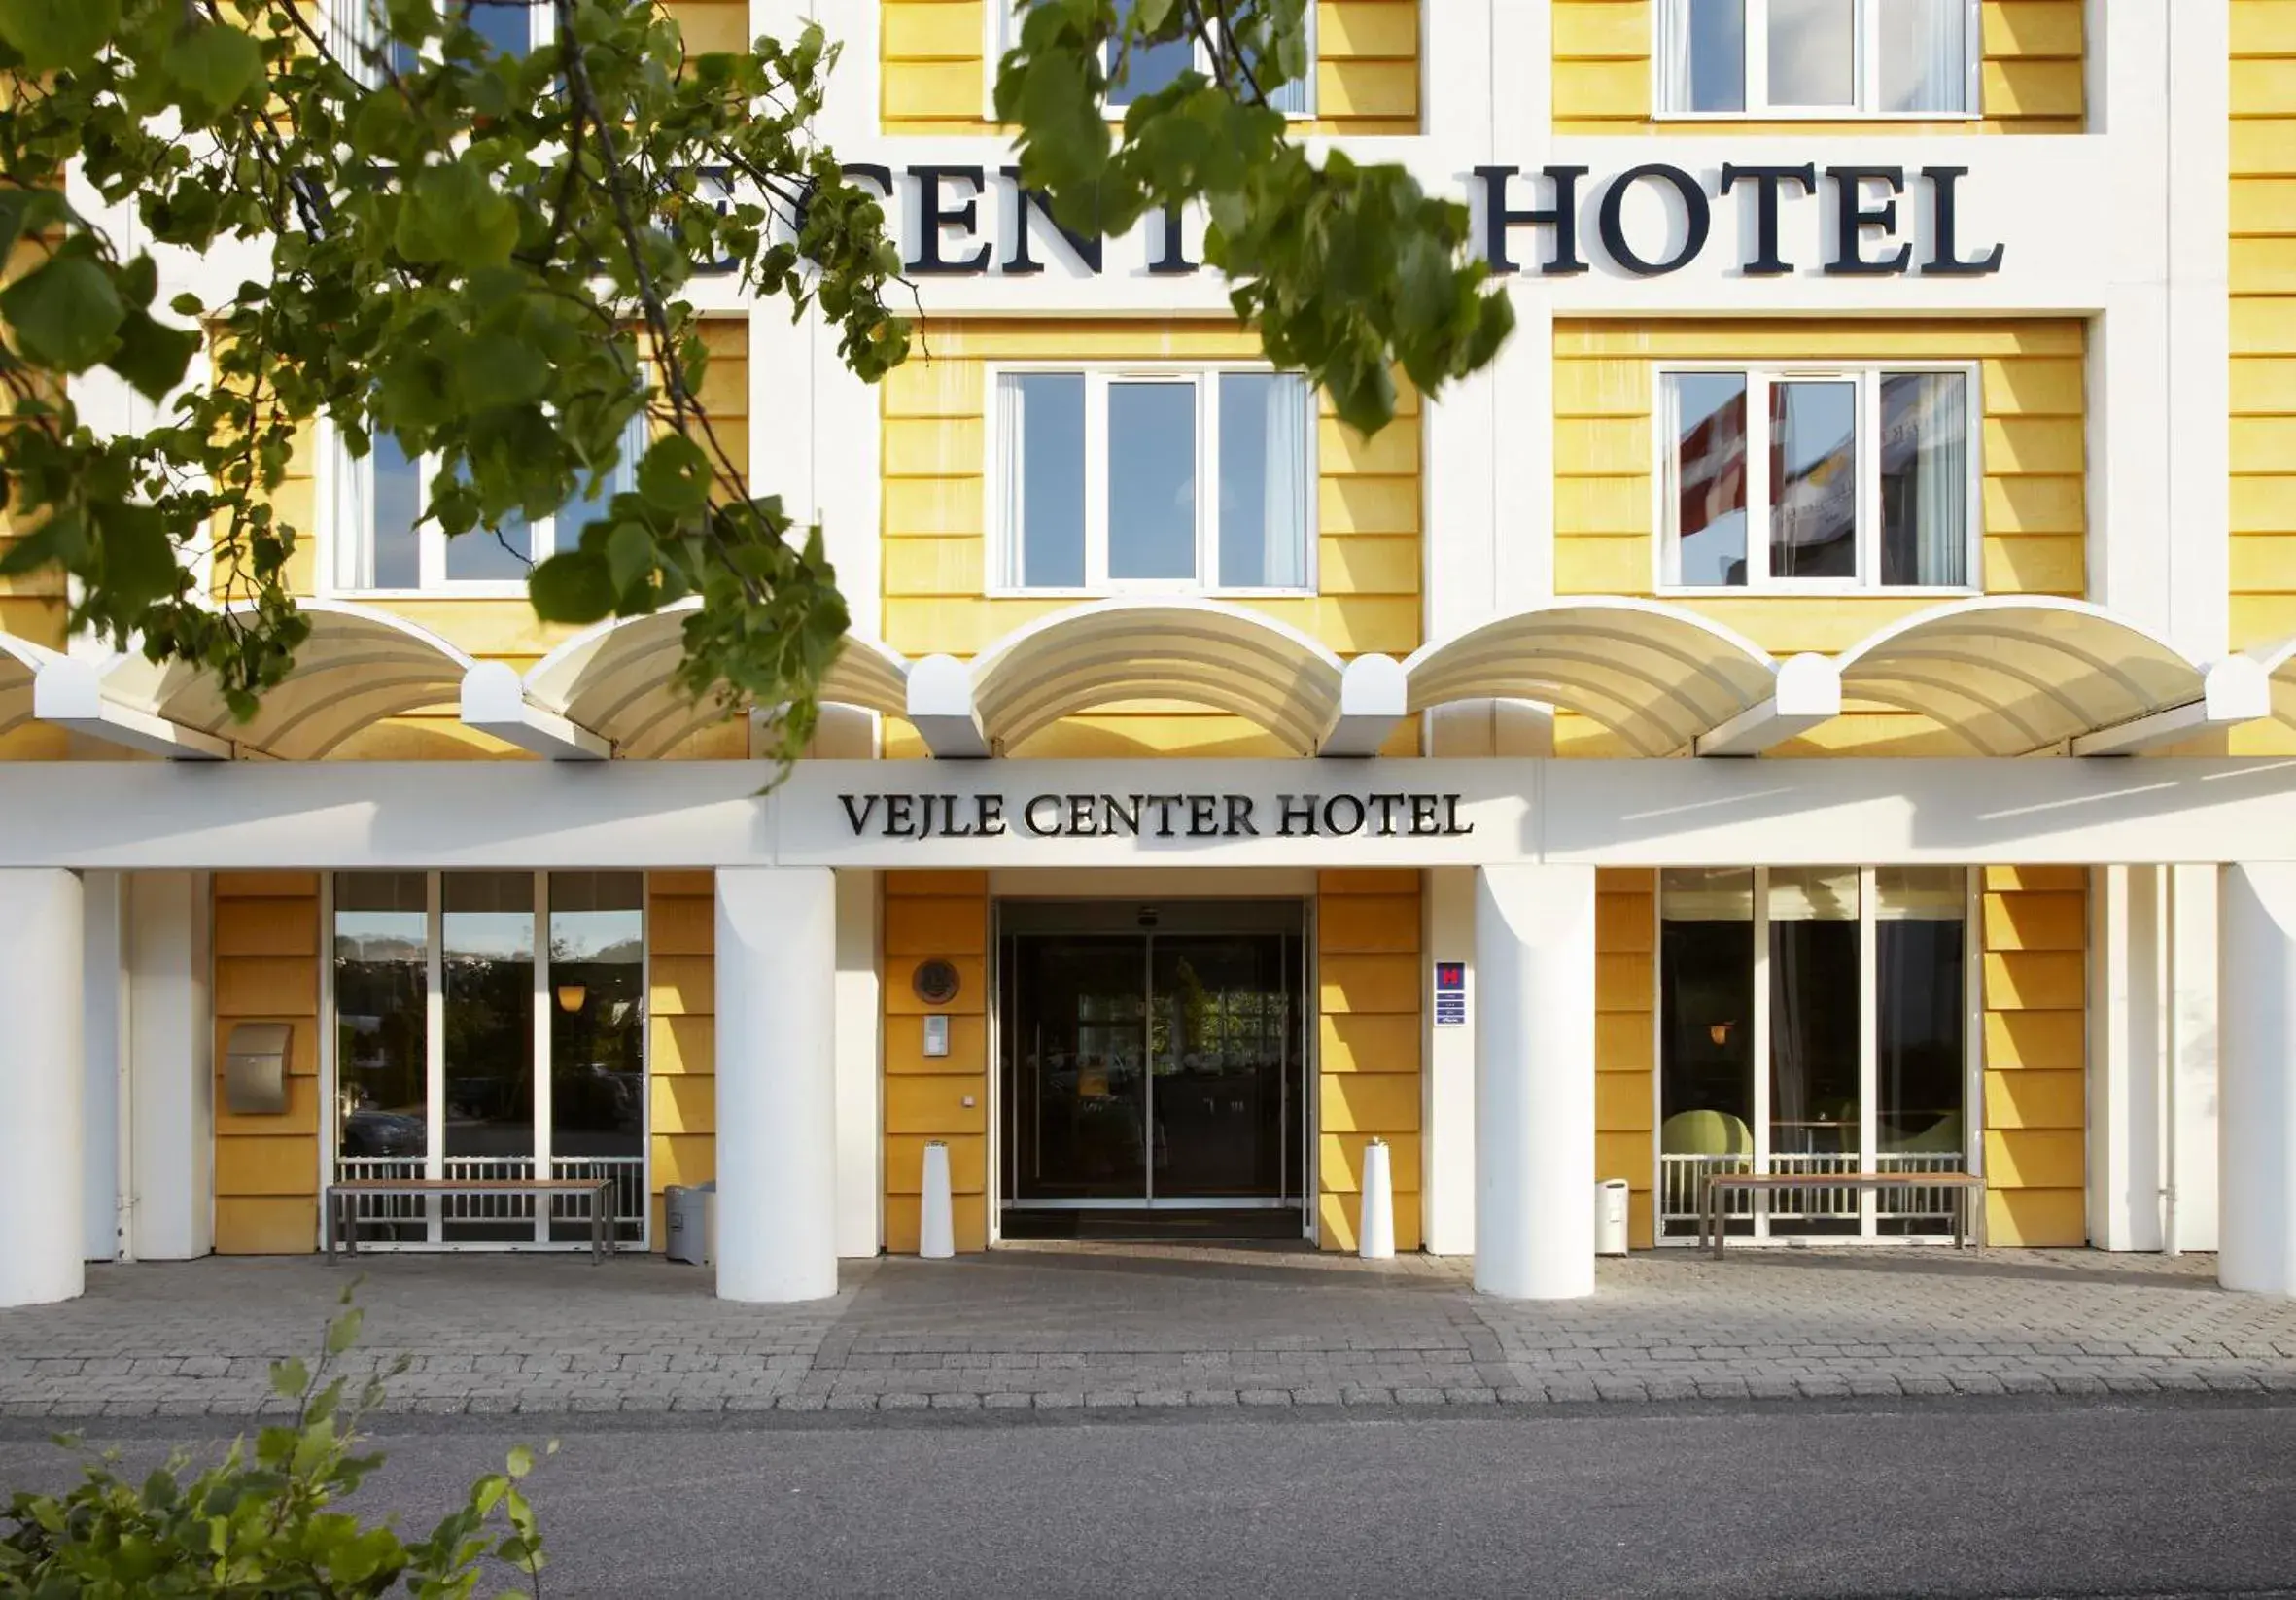 Facade/entrance in Vejle Center Hotel